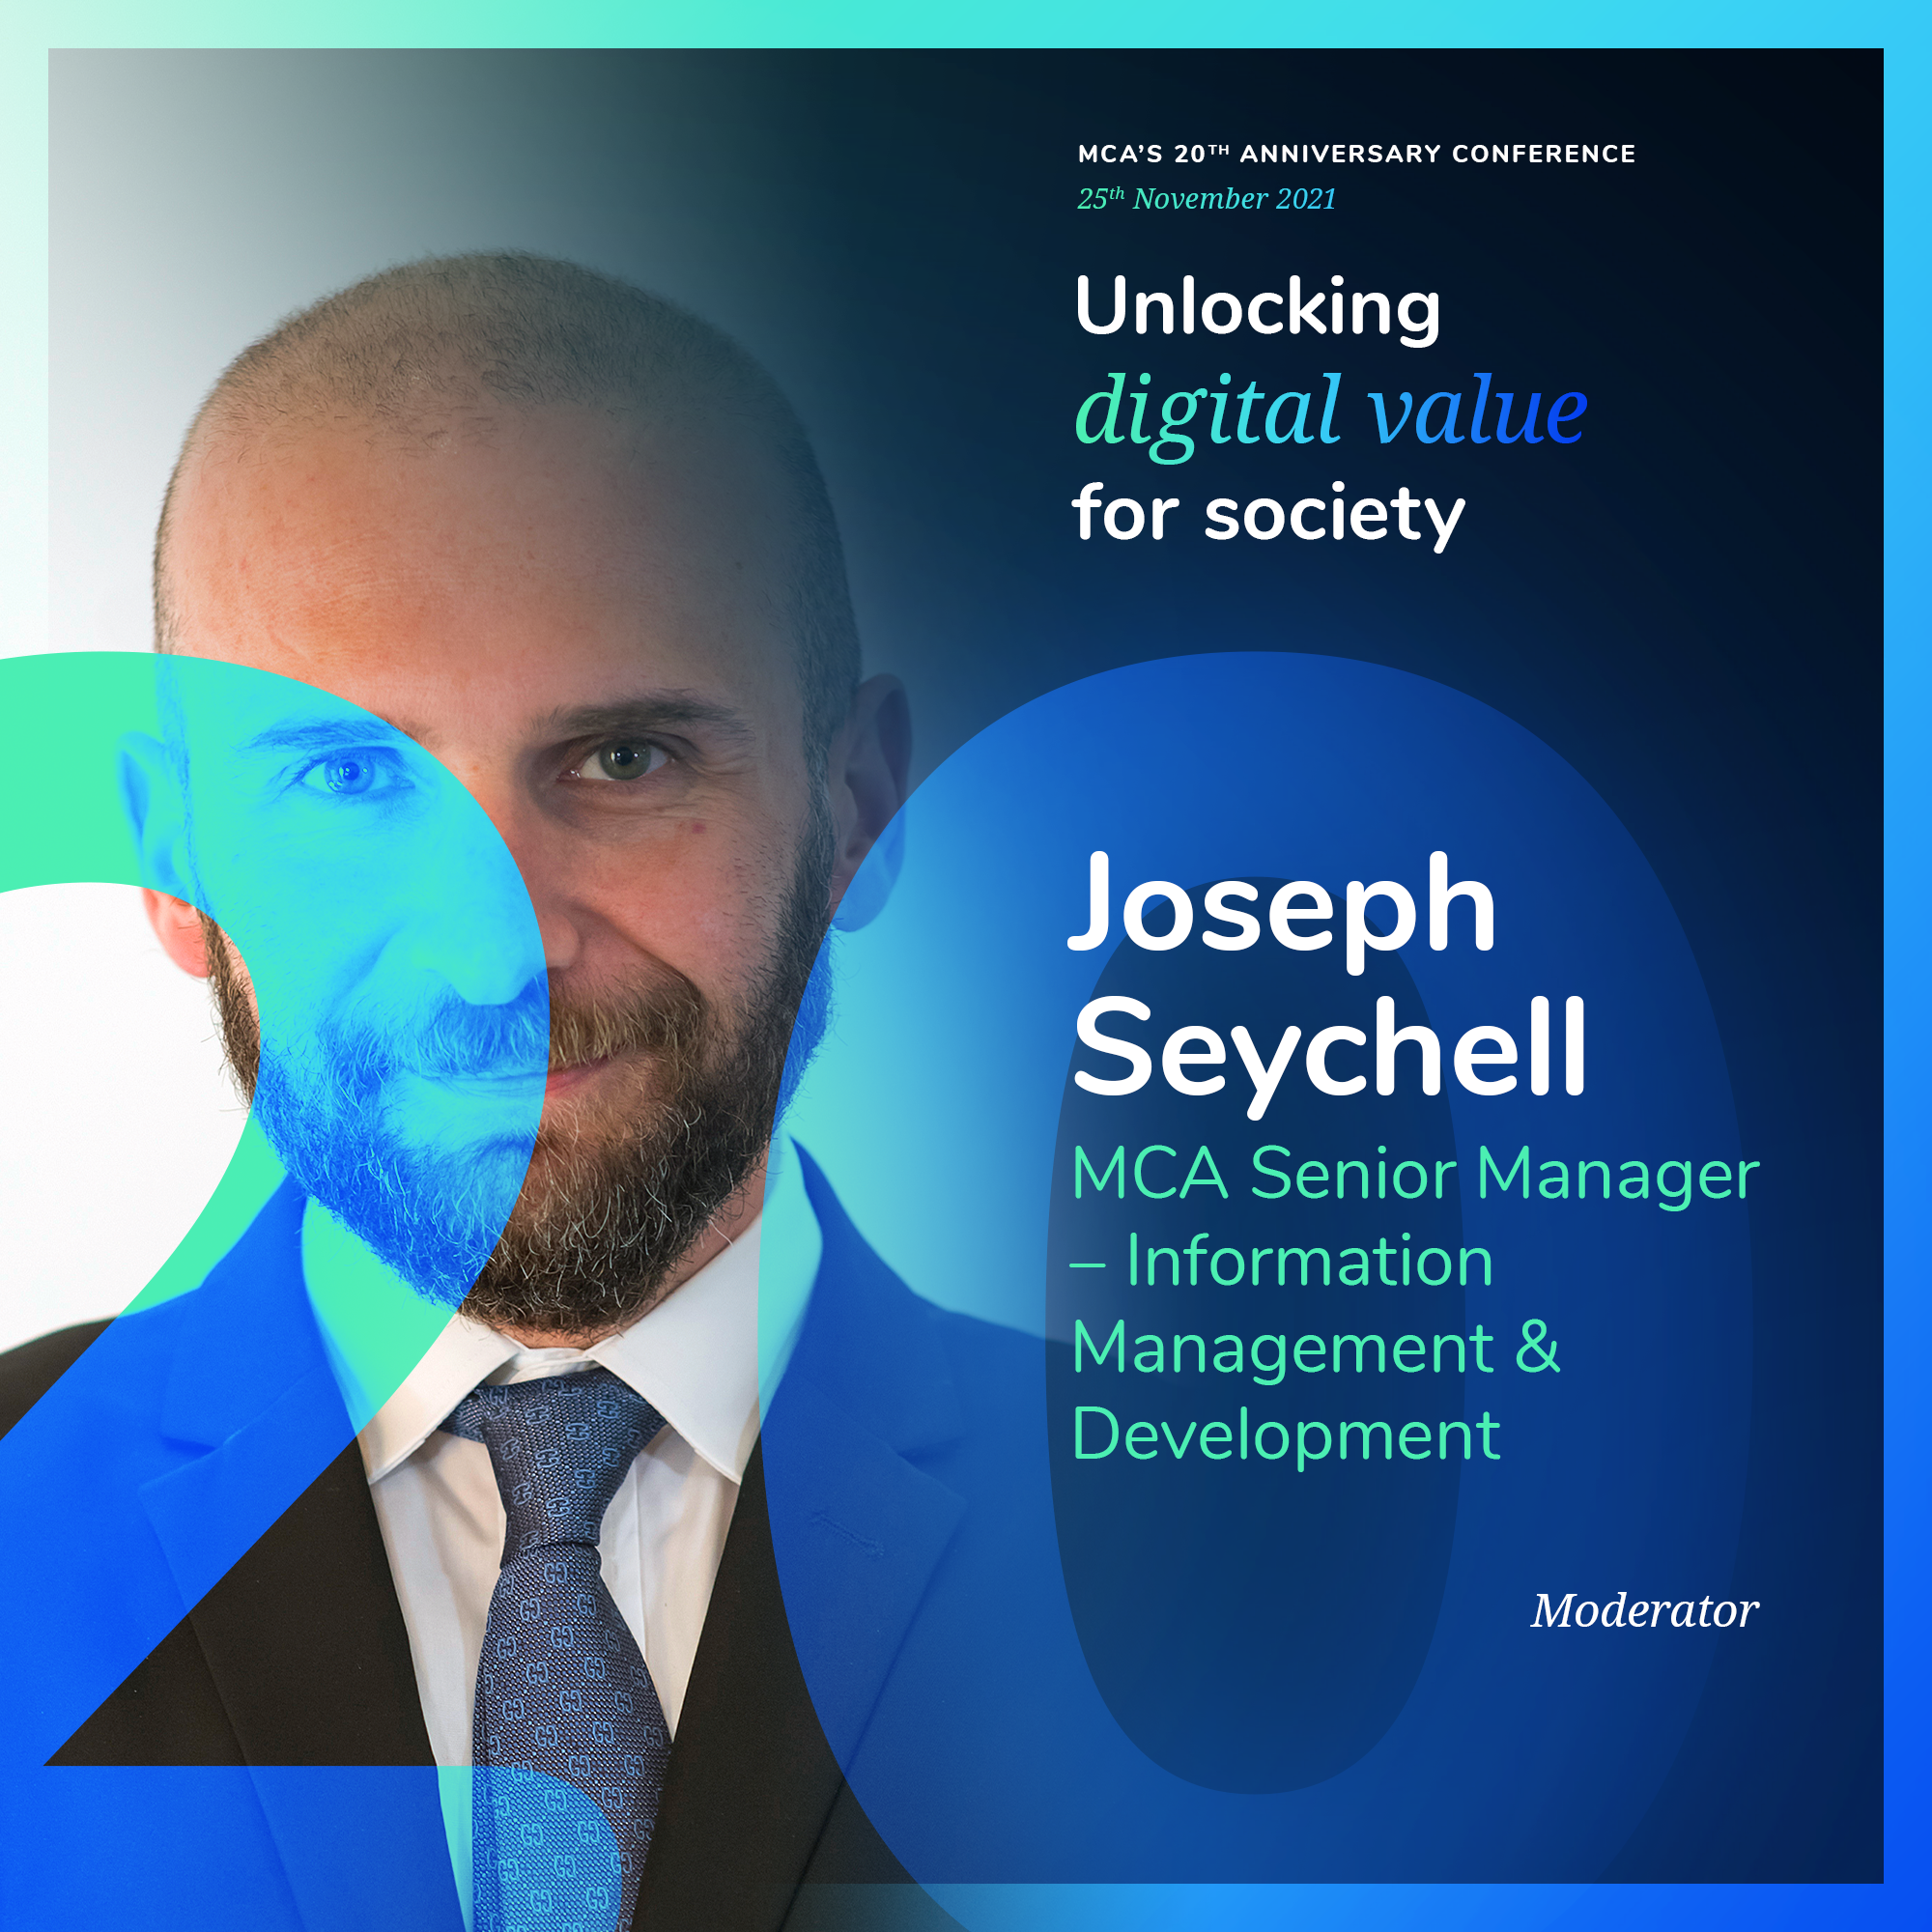 Joseph Seychell moderator profile